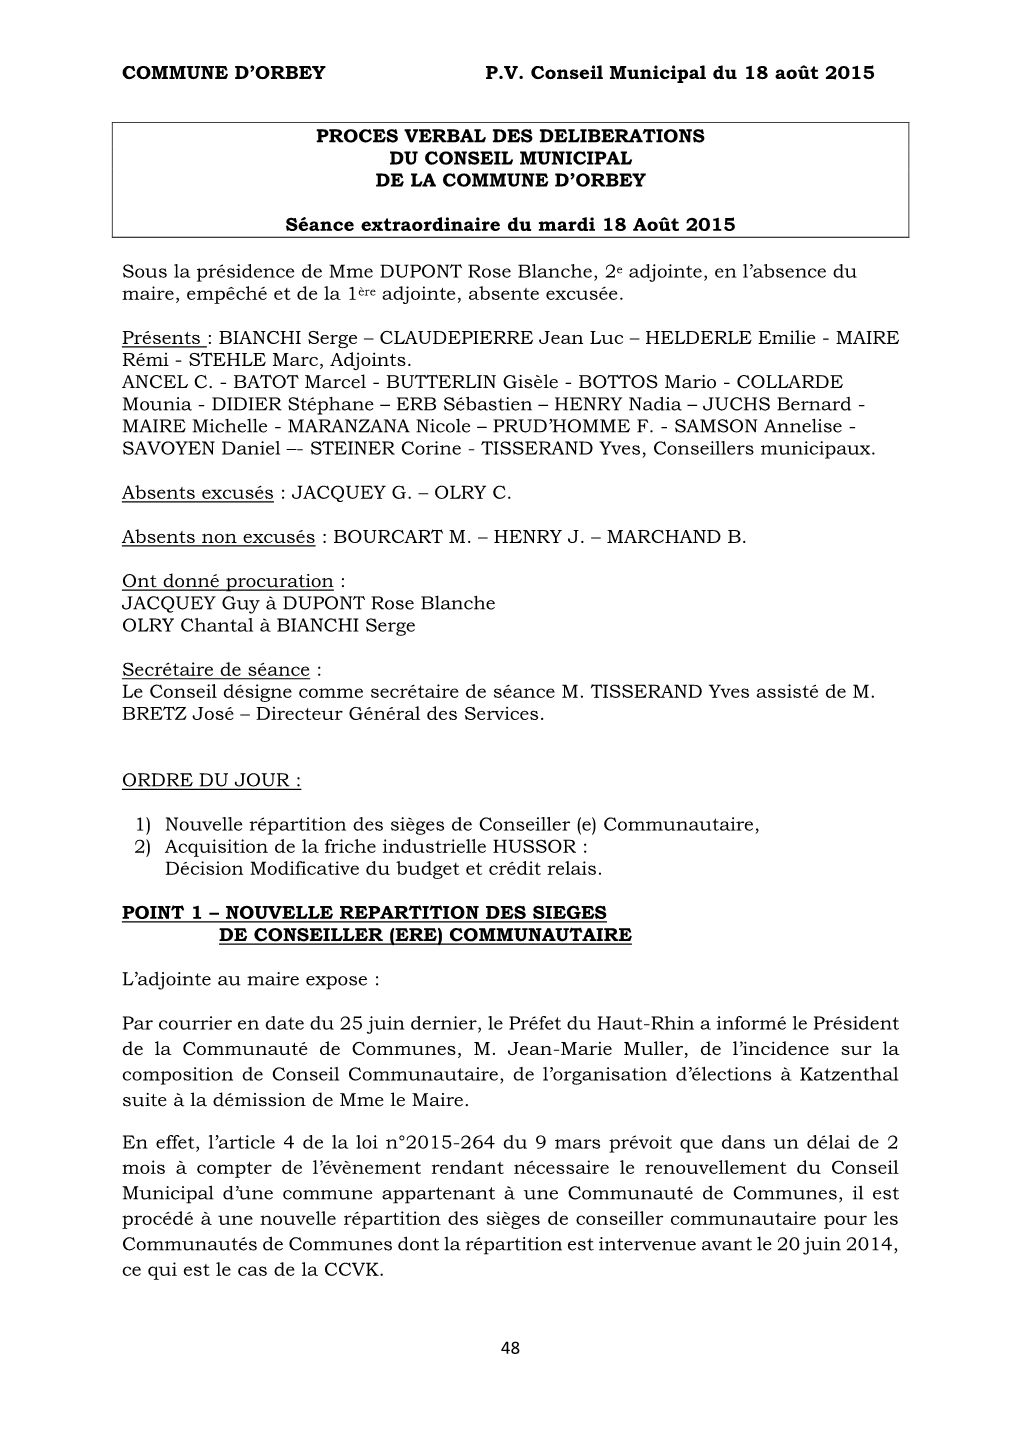 COMMUNE D'orbey P.V. Conseil Municipal Du 18 Août 2015 48